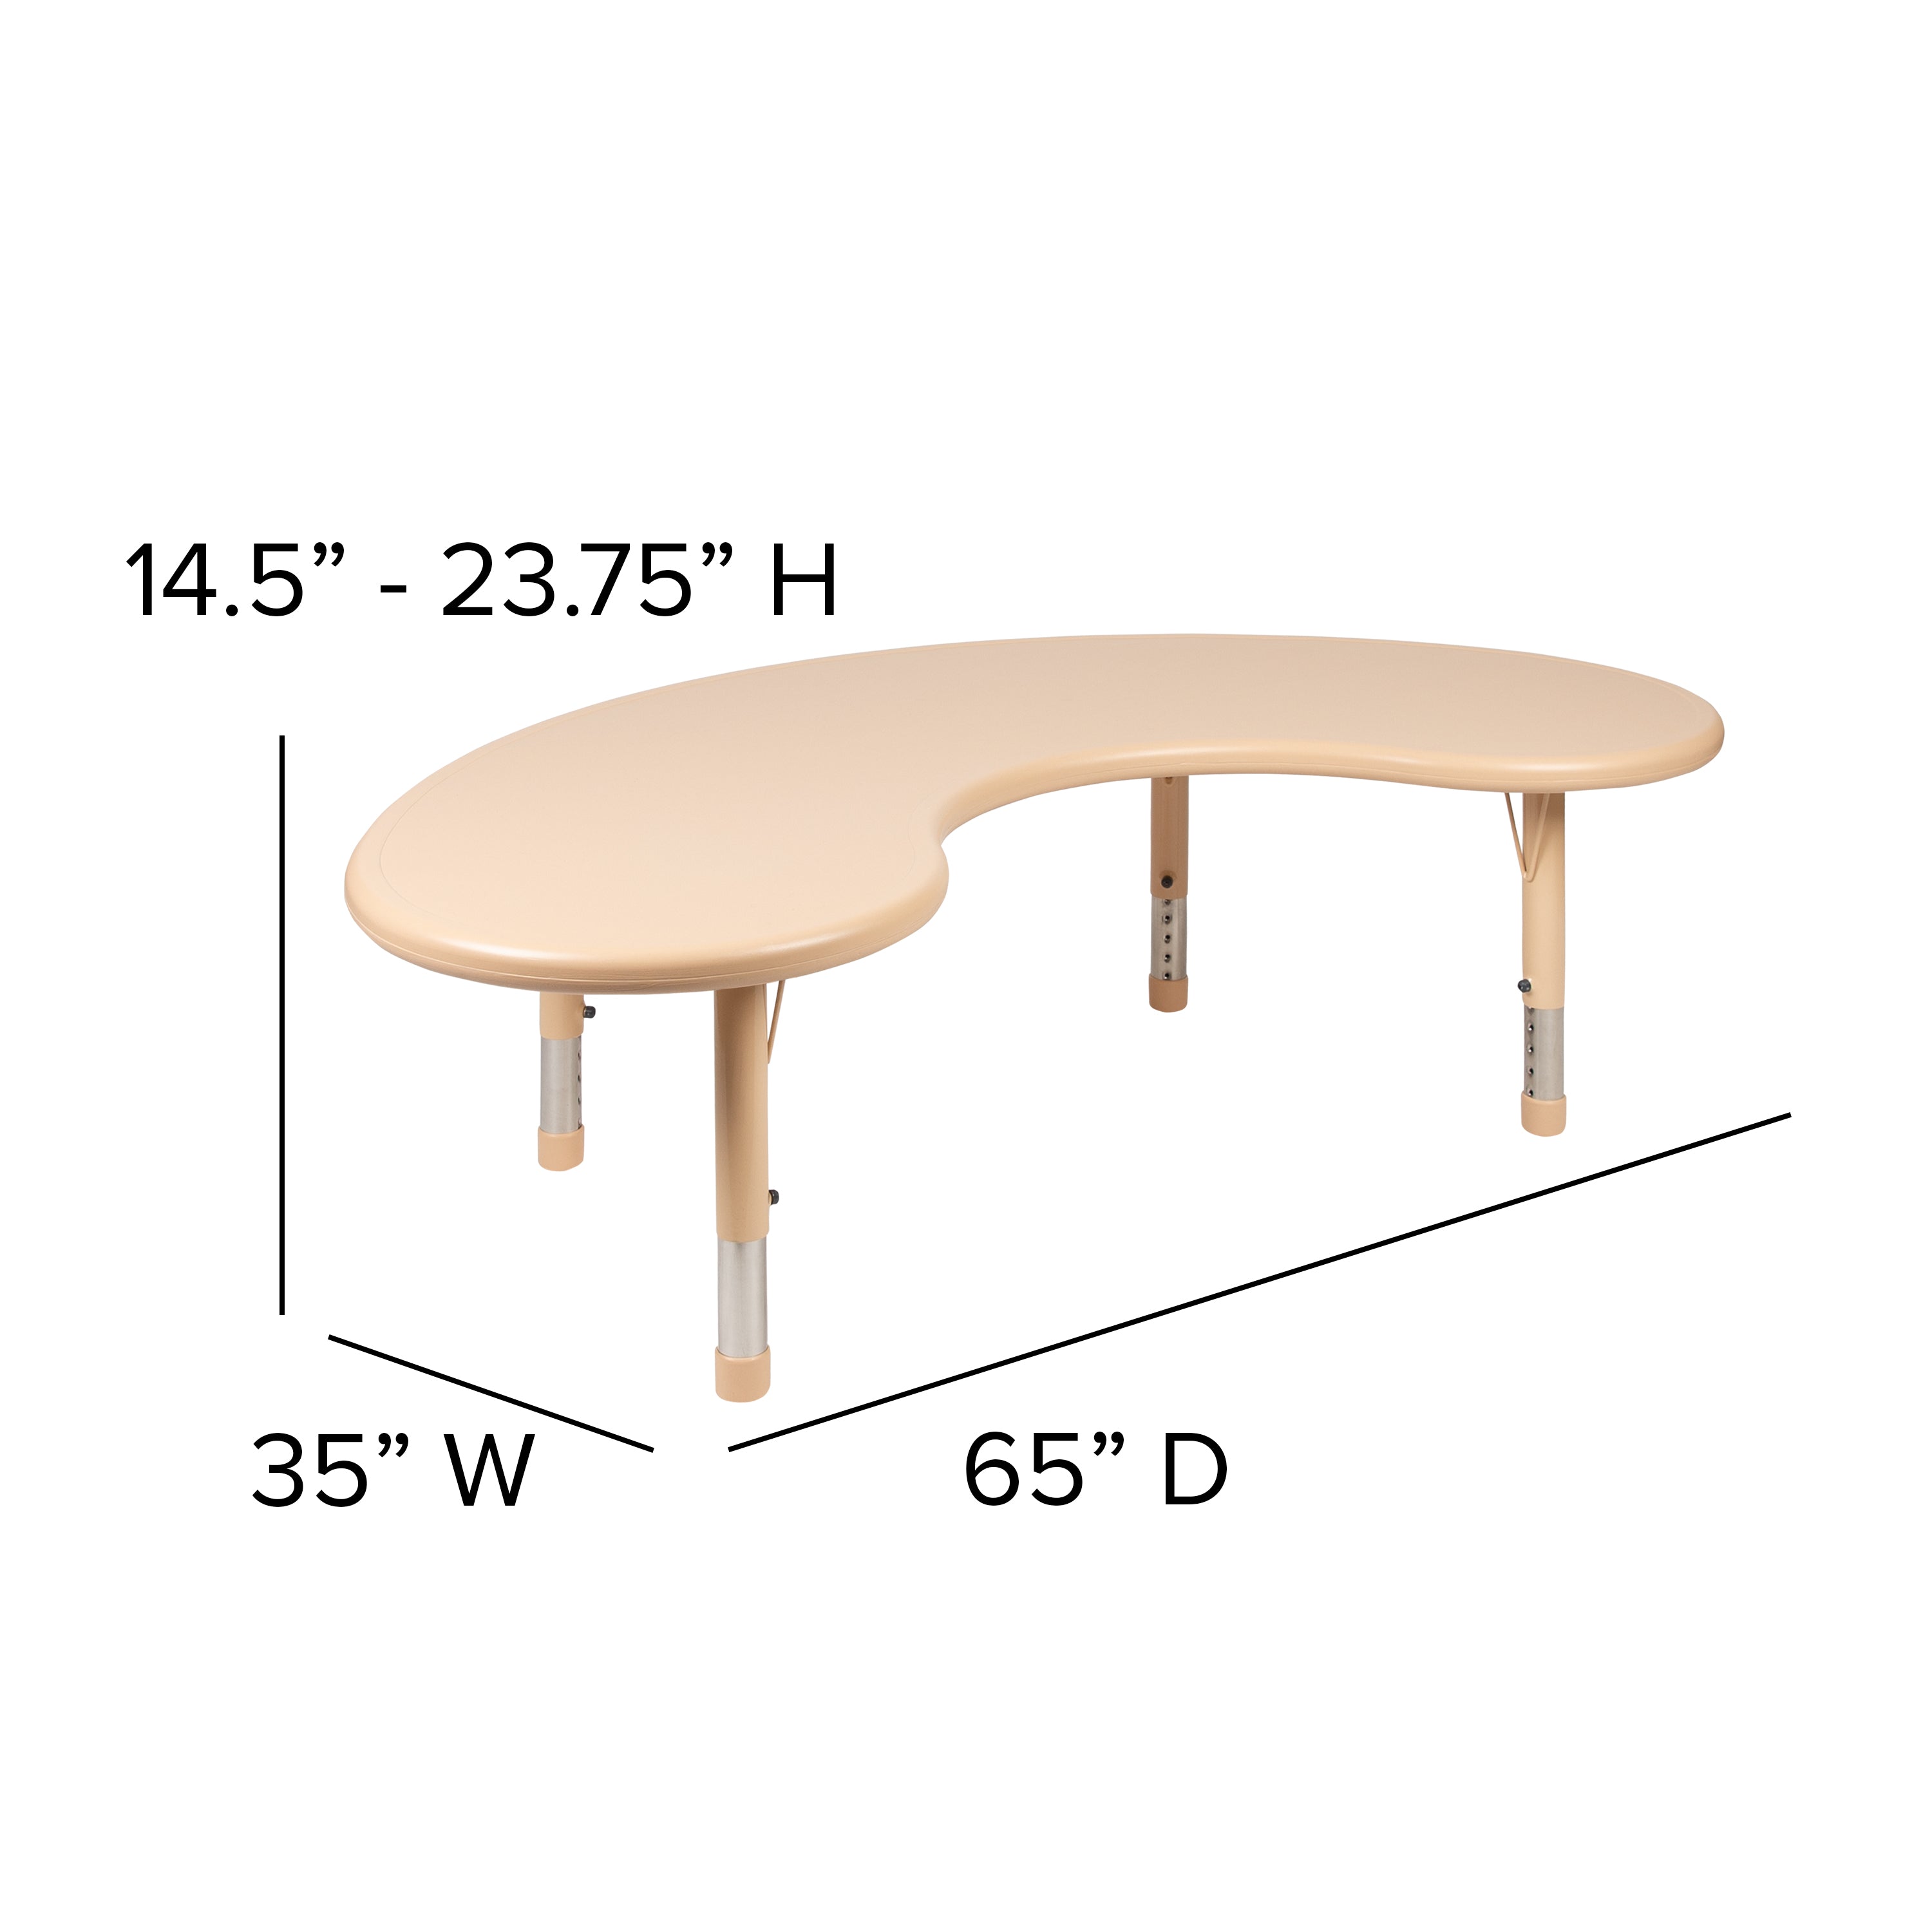 35"W x 65"L Half-Moon Plastic Height Adjustable Activity Table-Half-Moon Colorful Activity Table-Flash Furniture-Wall2Wall Furnishings